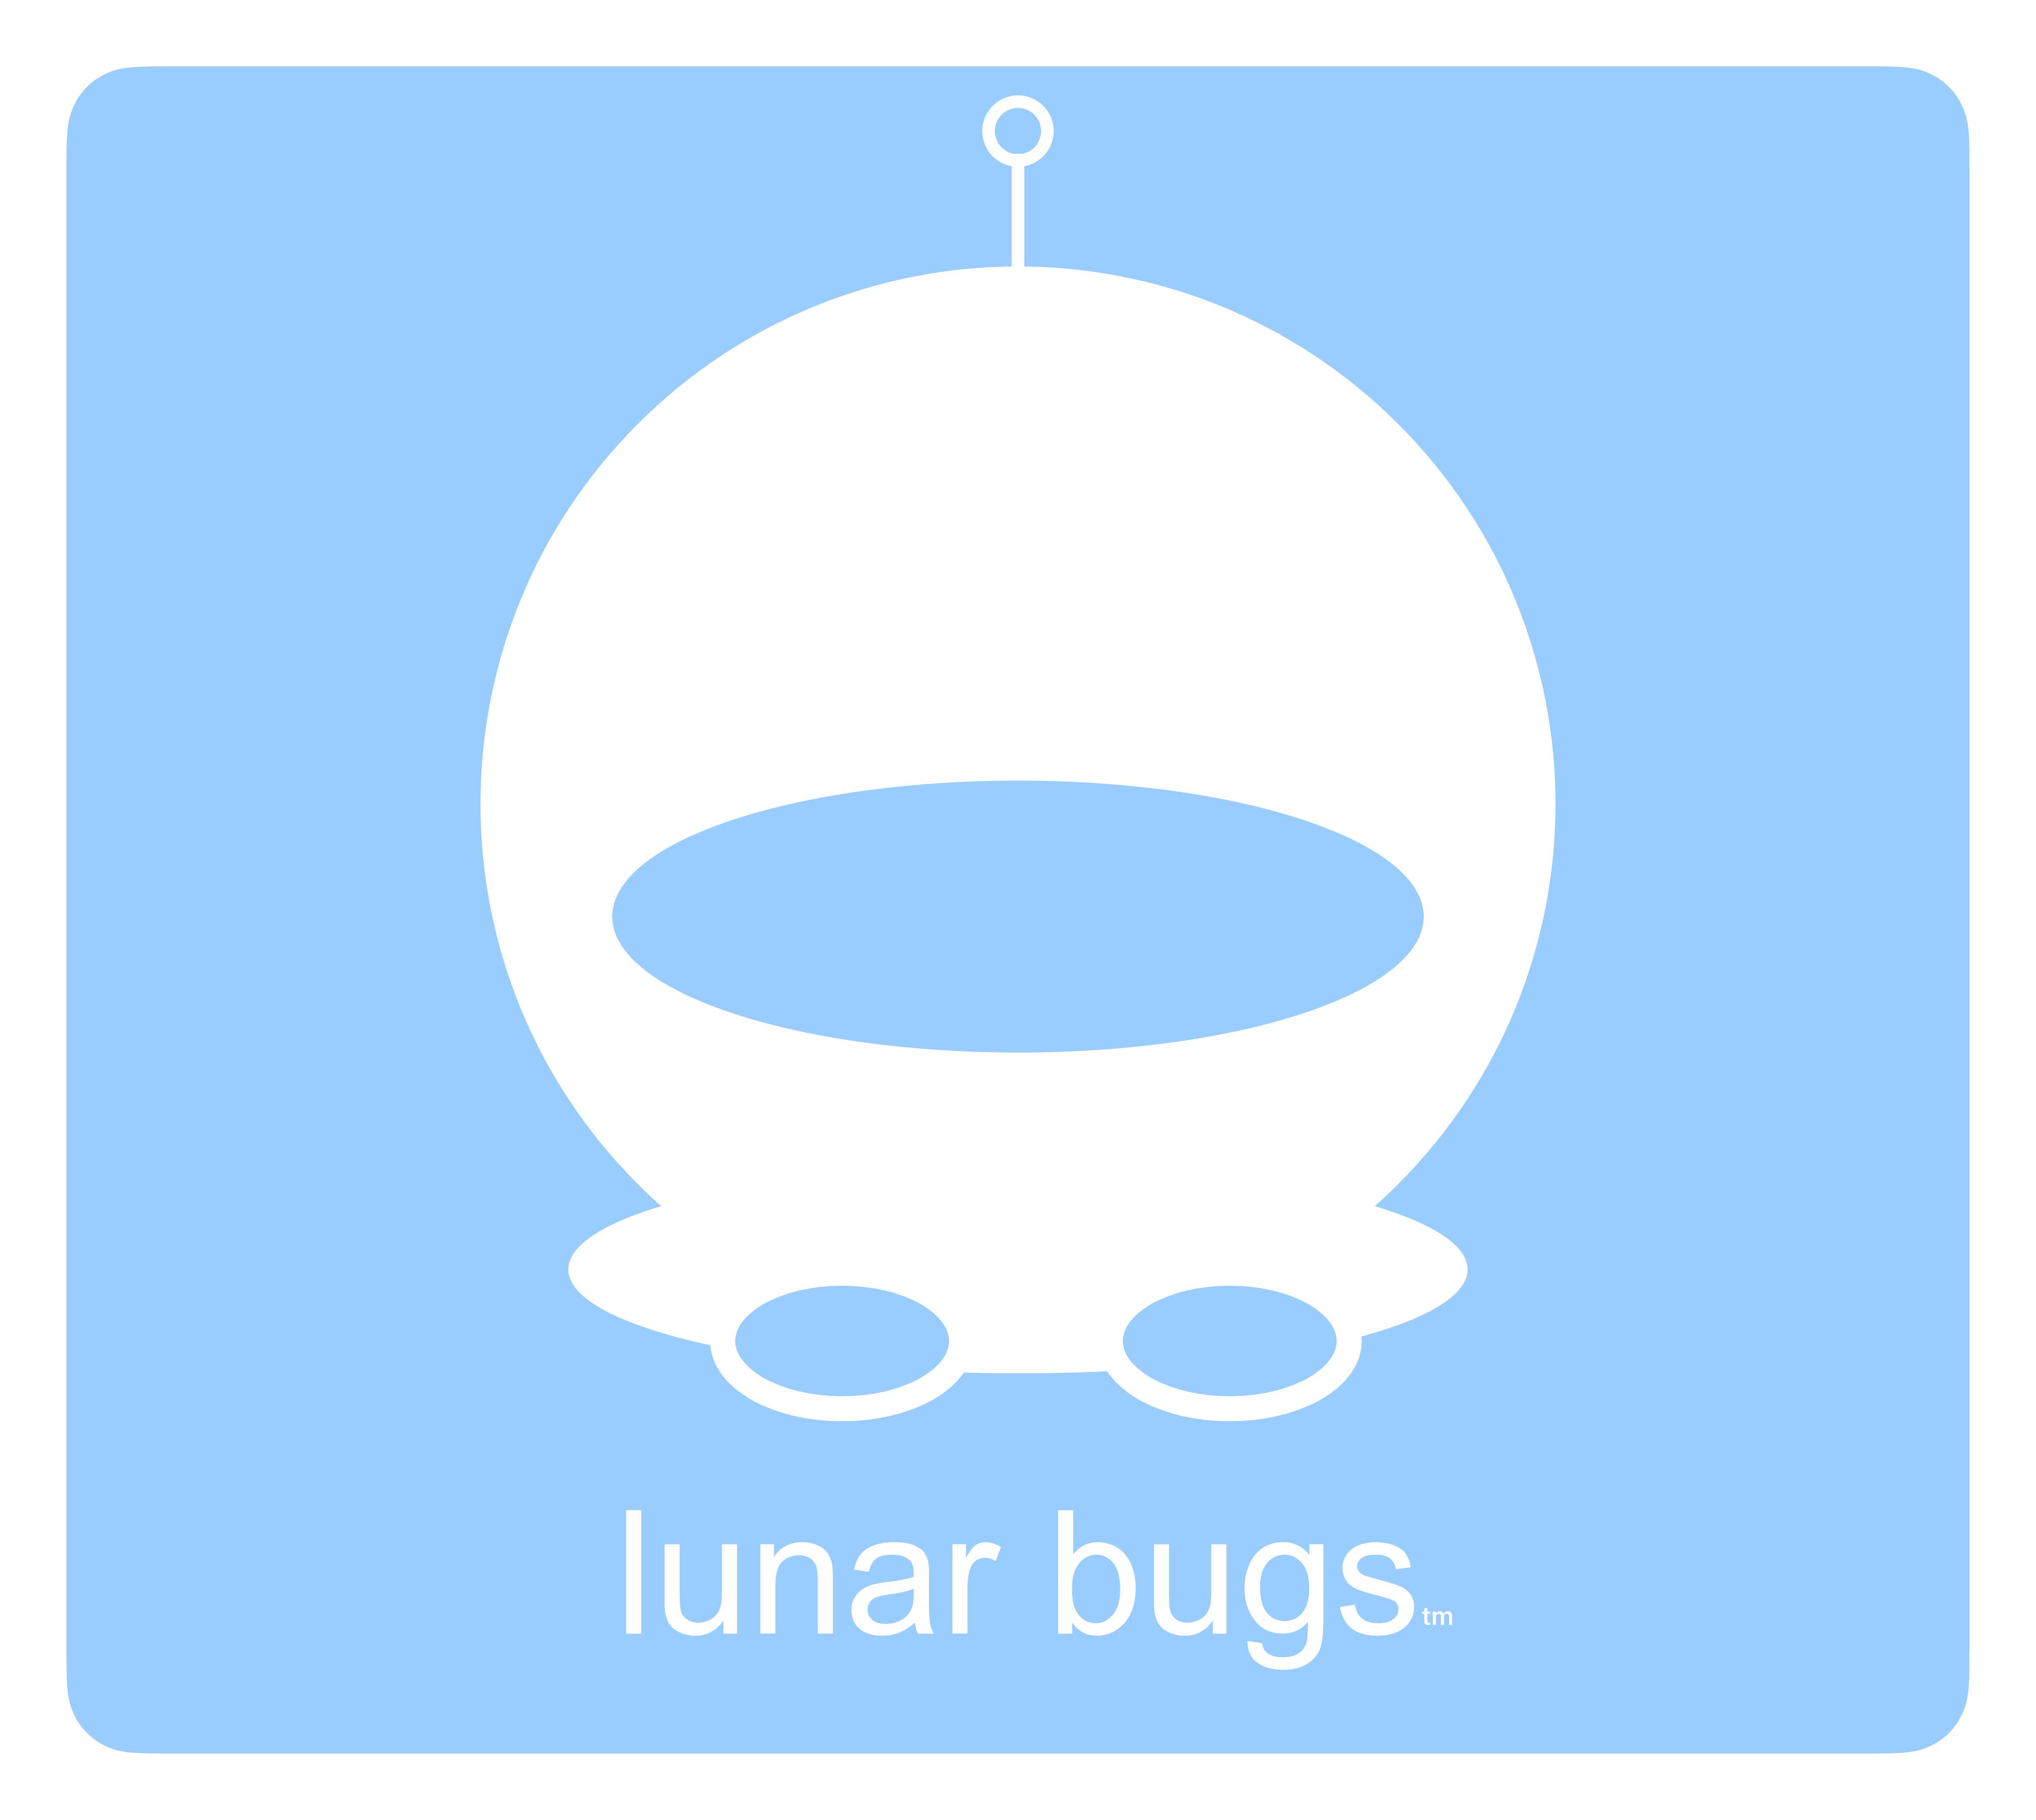 image of lunar bugs logo